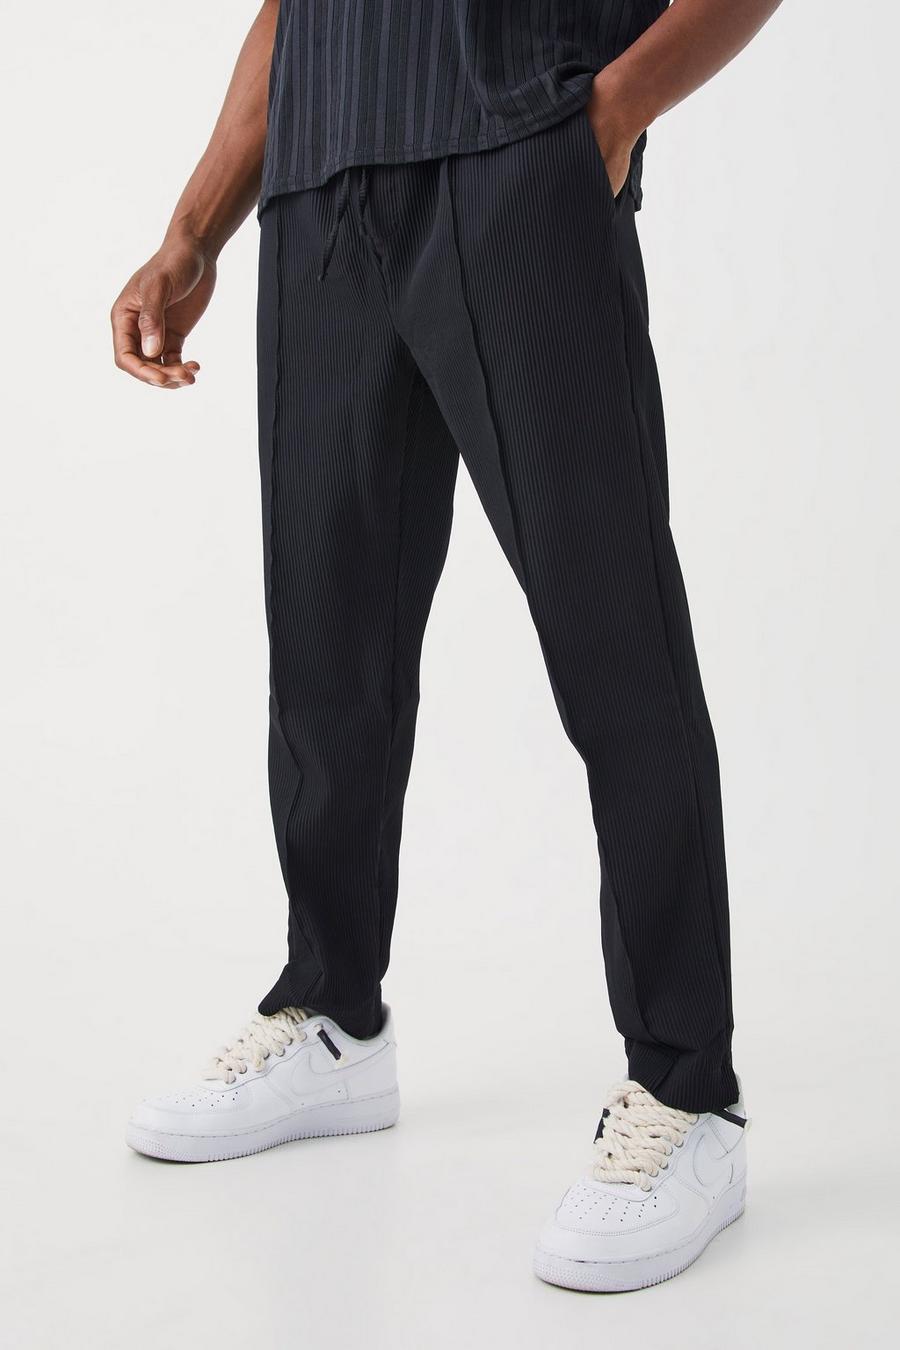 Pantalon cintré plissé à taille élastique, Black